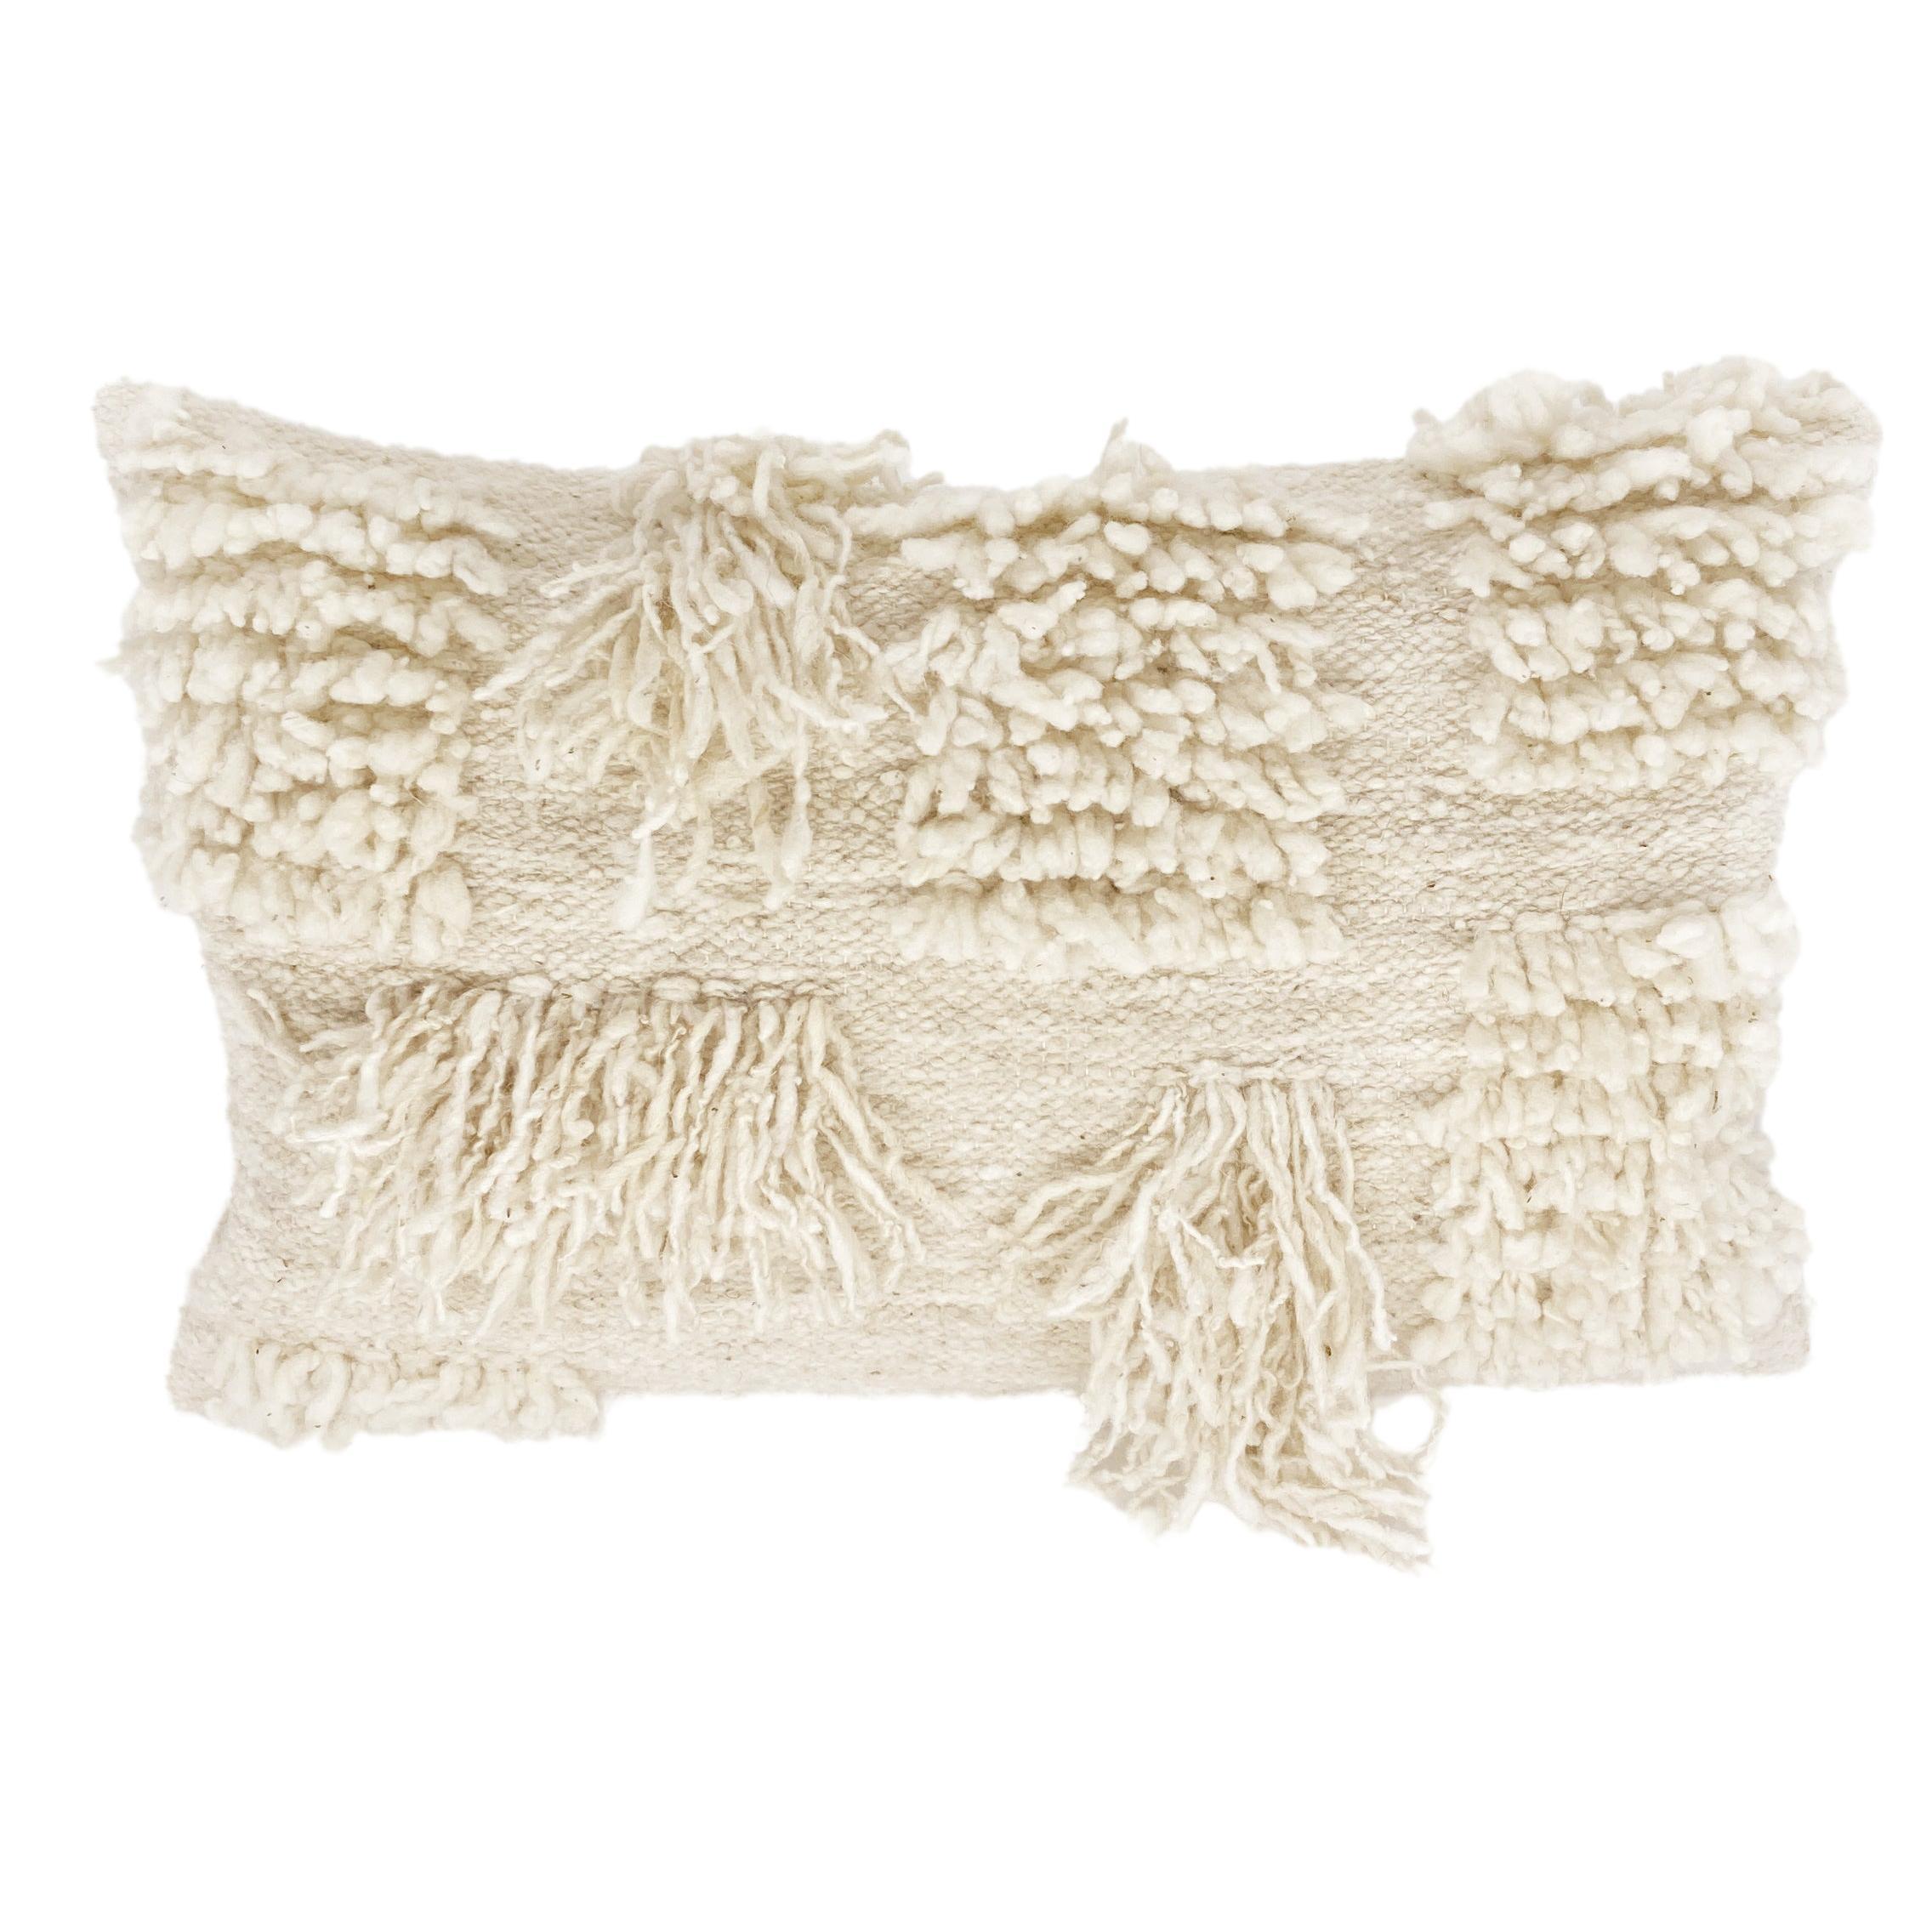 Coussin lombaire en laine de mouton blanche organique et moderne, fait à la main, en stock